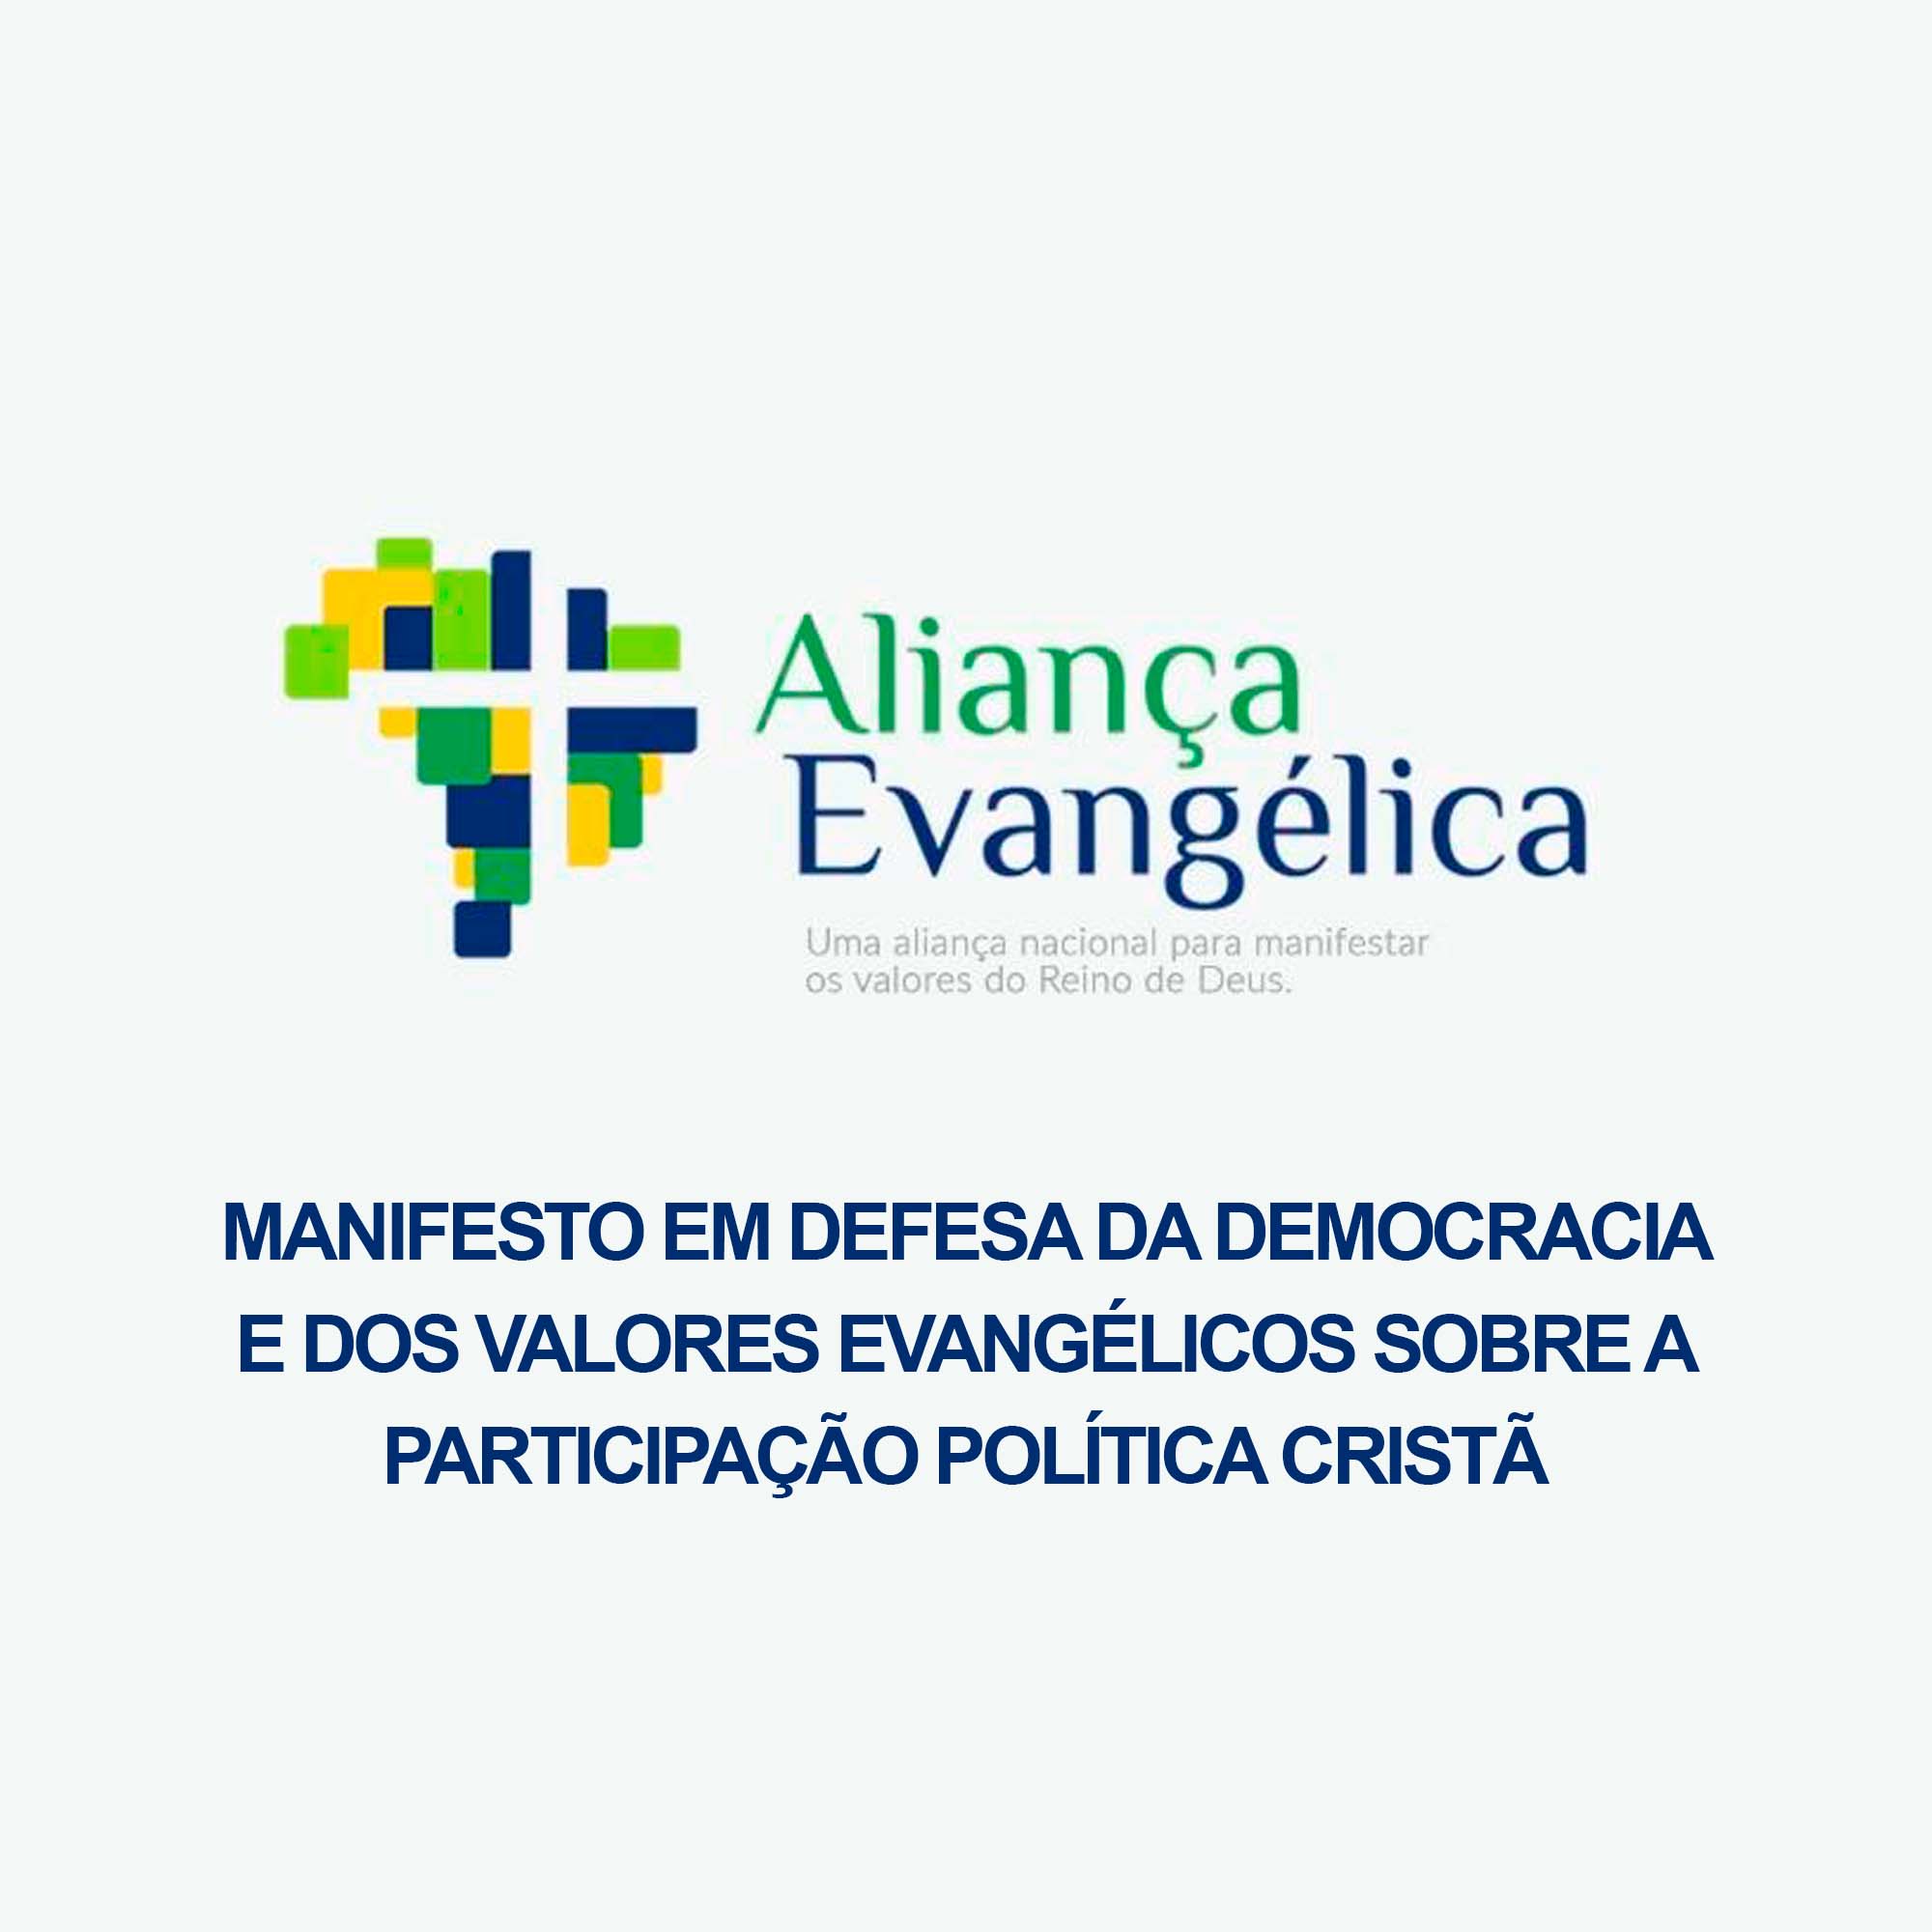 Manifesto em defesa da democracia e dos valores evangélicos